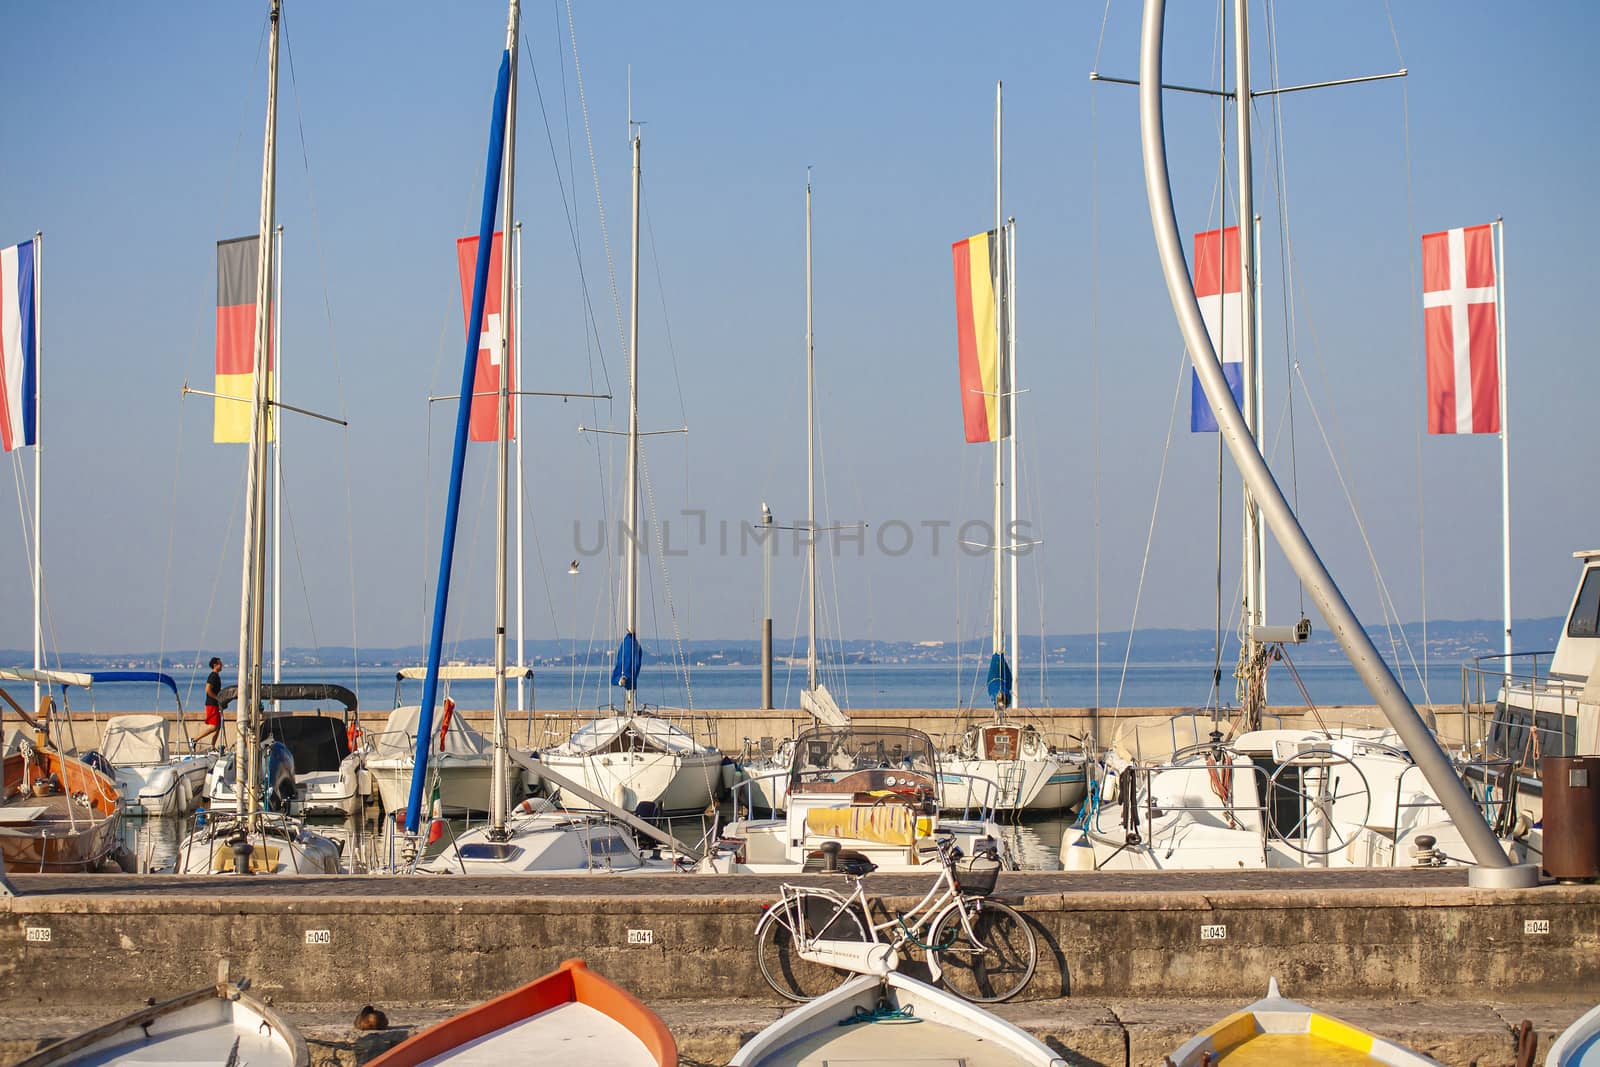 BARDOLINO, ITALY 16 SEPTEMBER 2020: View of Bardolino's Port in the Garda Lake in Italy